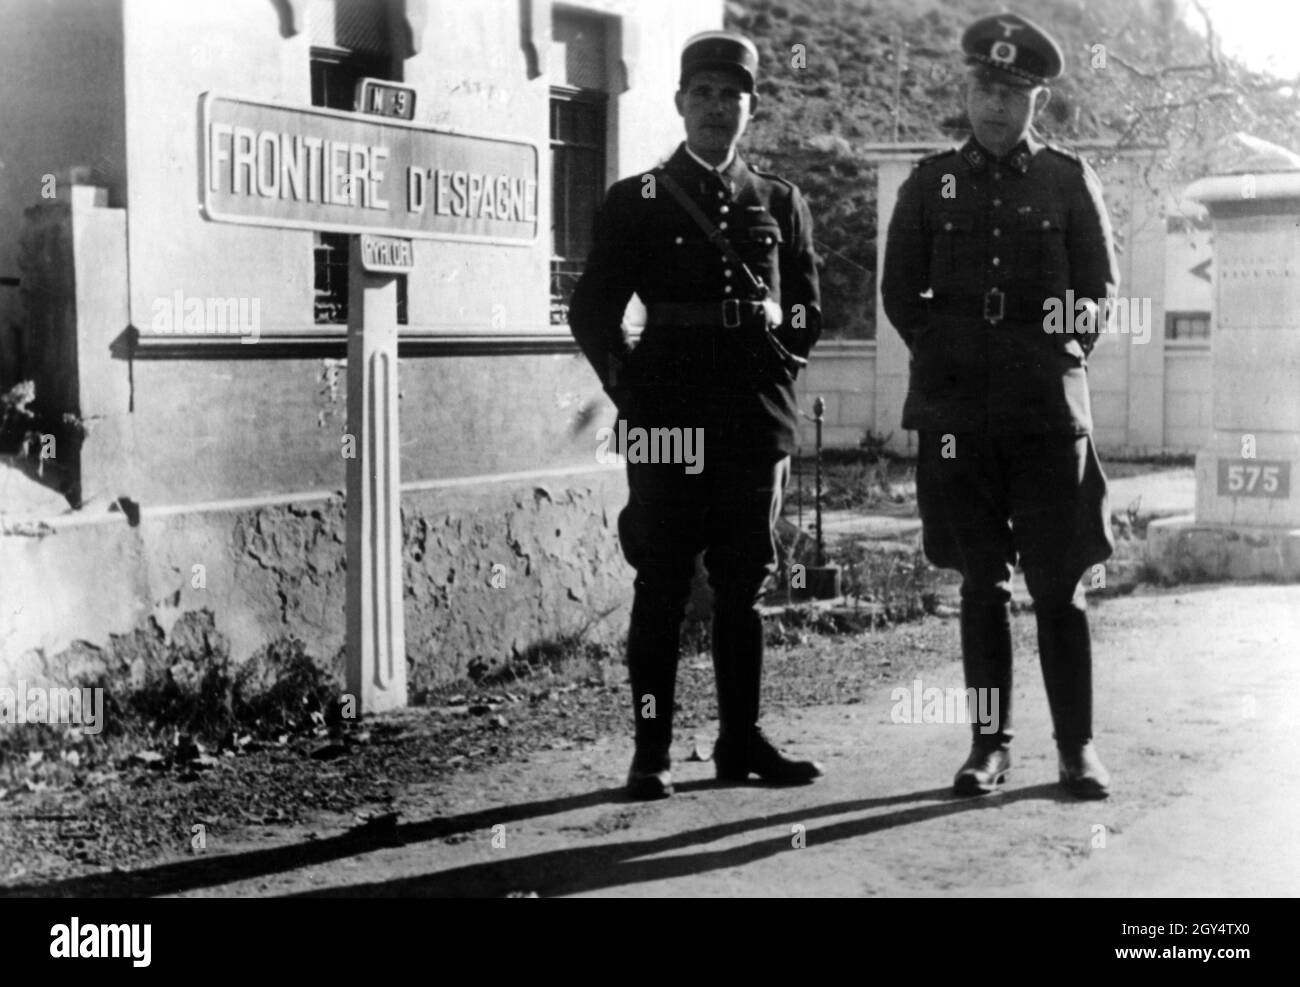 Un soldat allemand et un soldat français gardent un poste frontalier à la frontière franco-espagnole.[traduction automatique] Banque D'Images